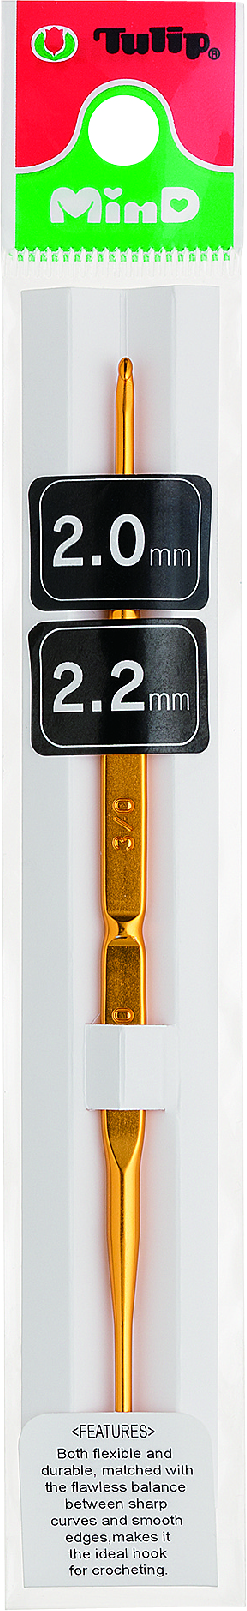 Doppelkopf Häkelnadel MinD von Tulip 4,50 - 5,50 mm